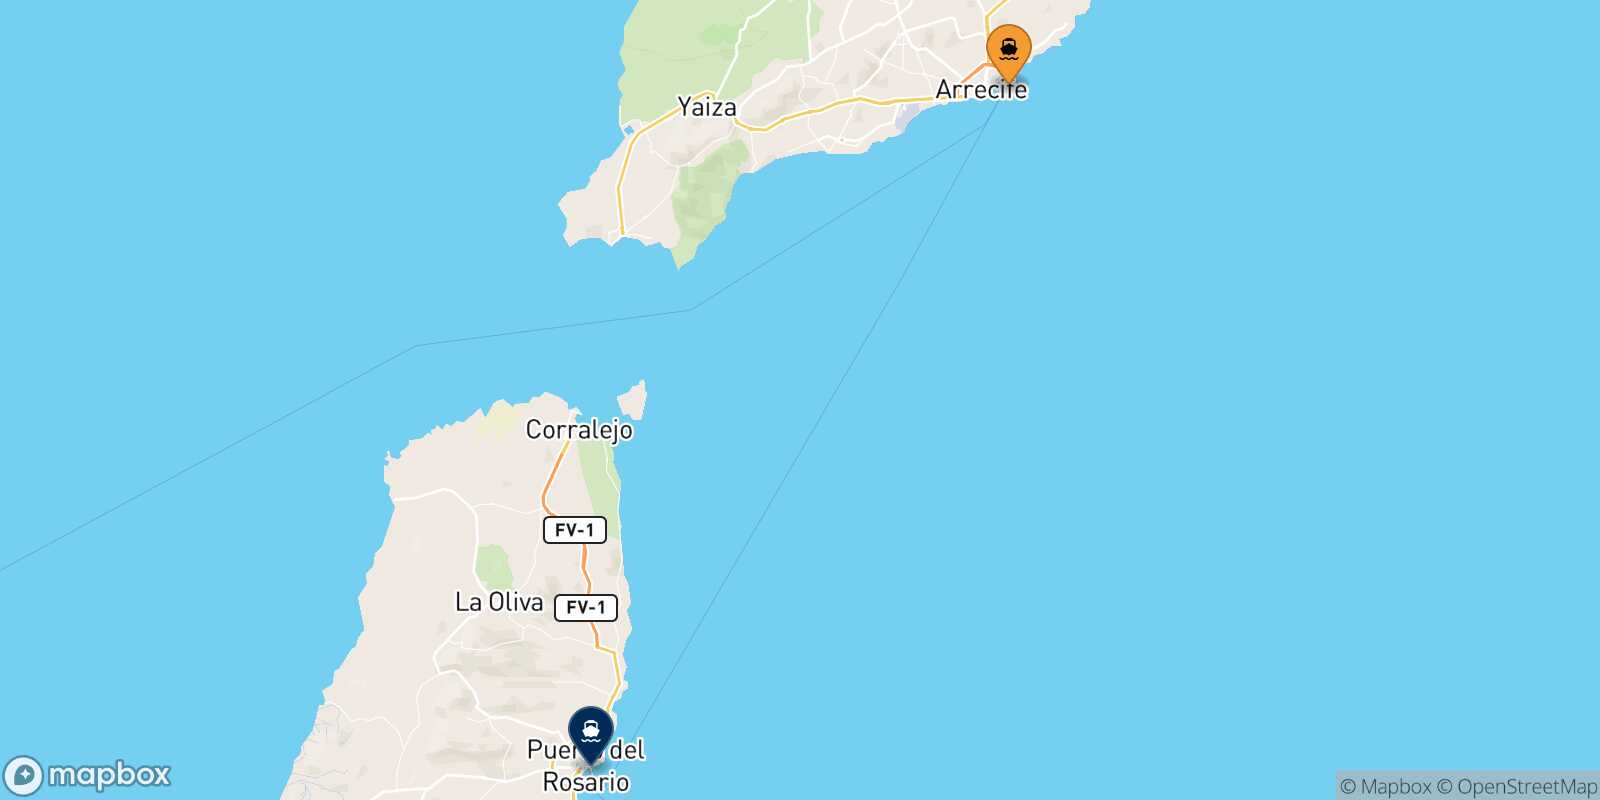 Arrecife (Lanzarote) Puerto Del Rosario (Fuerteventura) route map